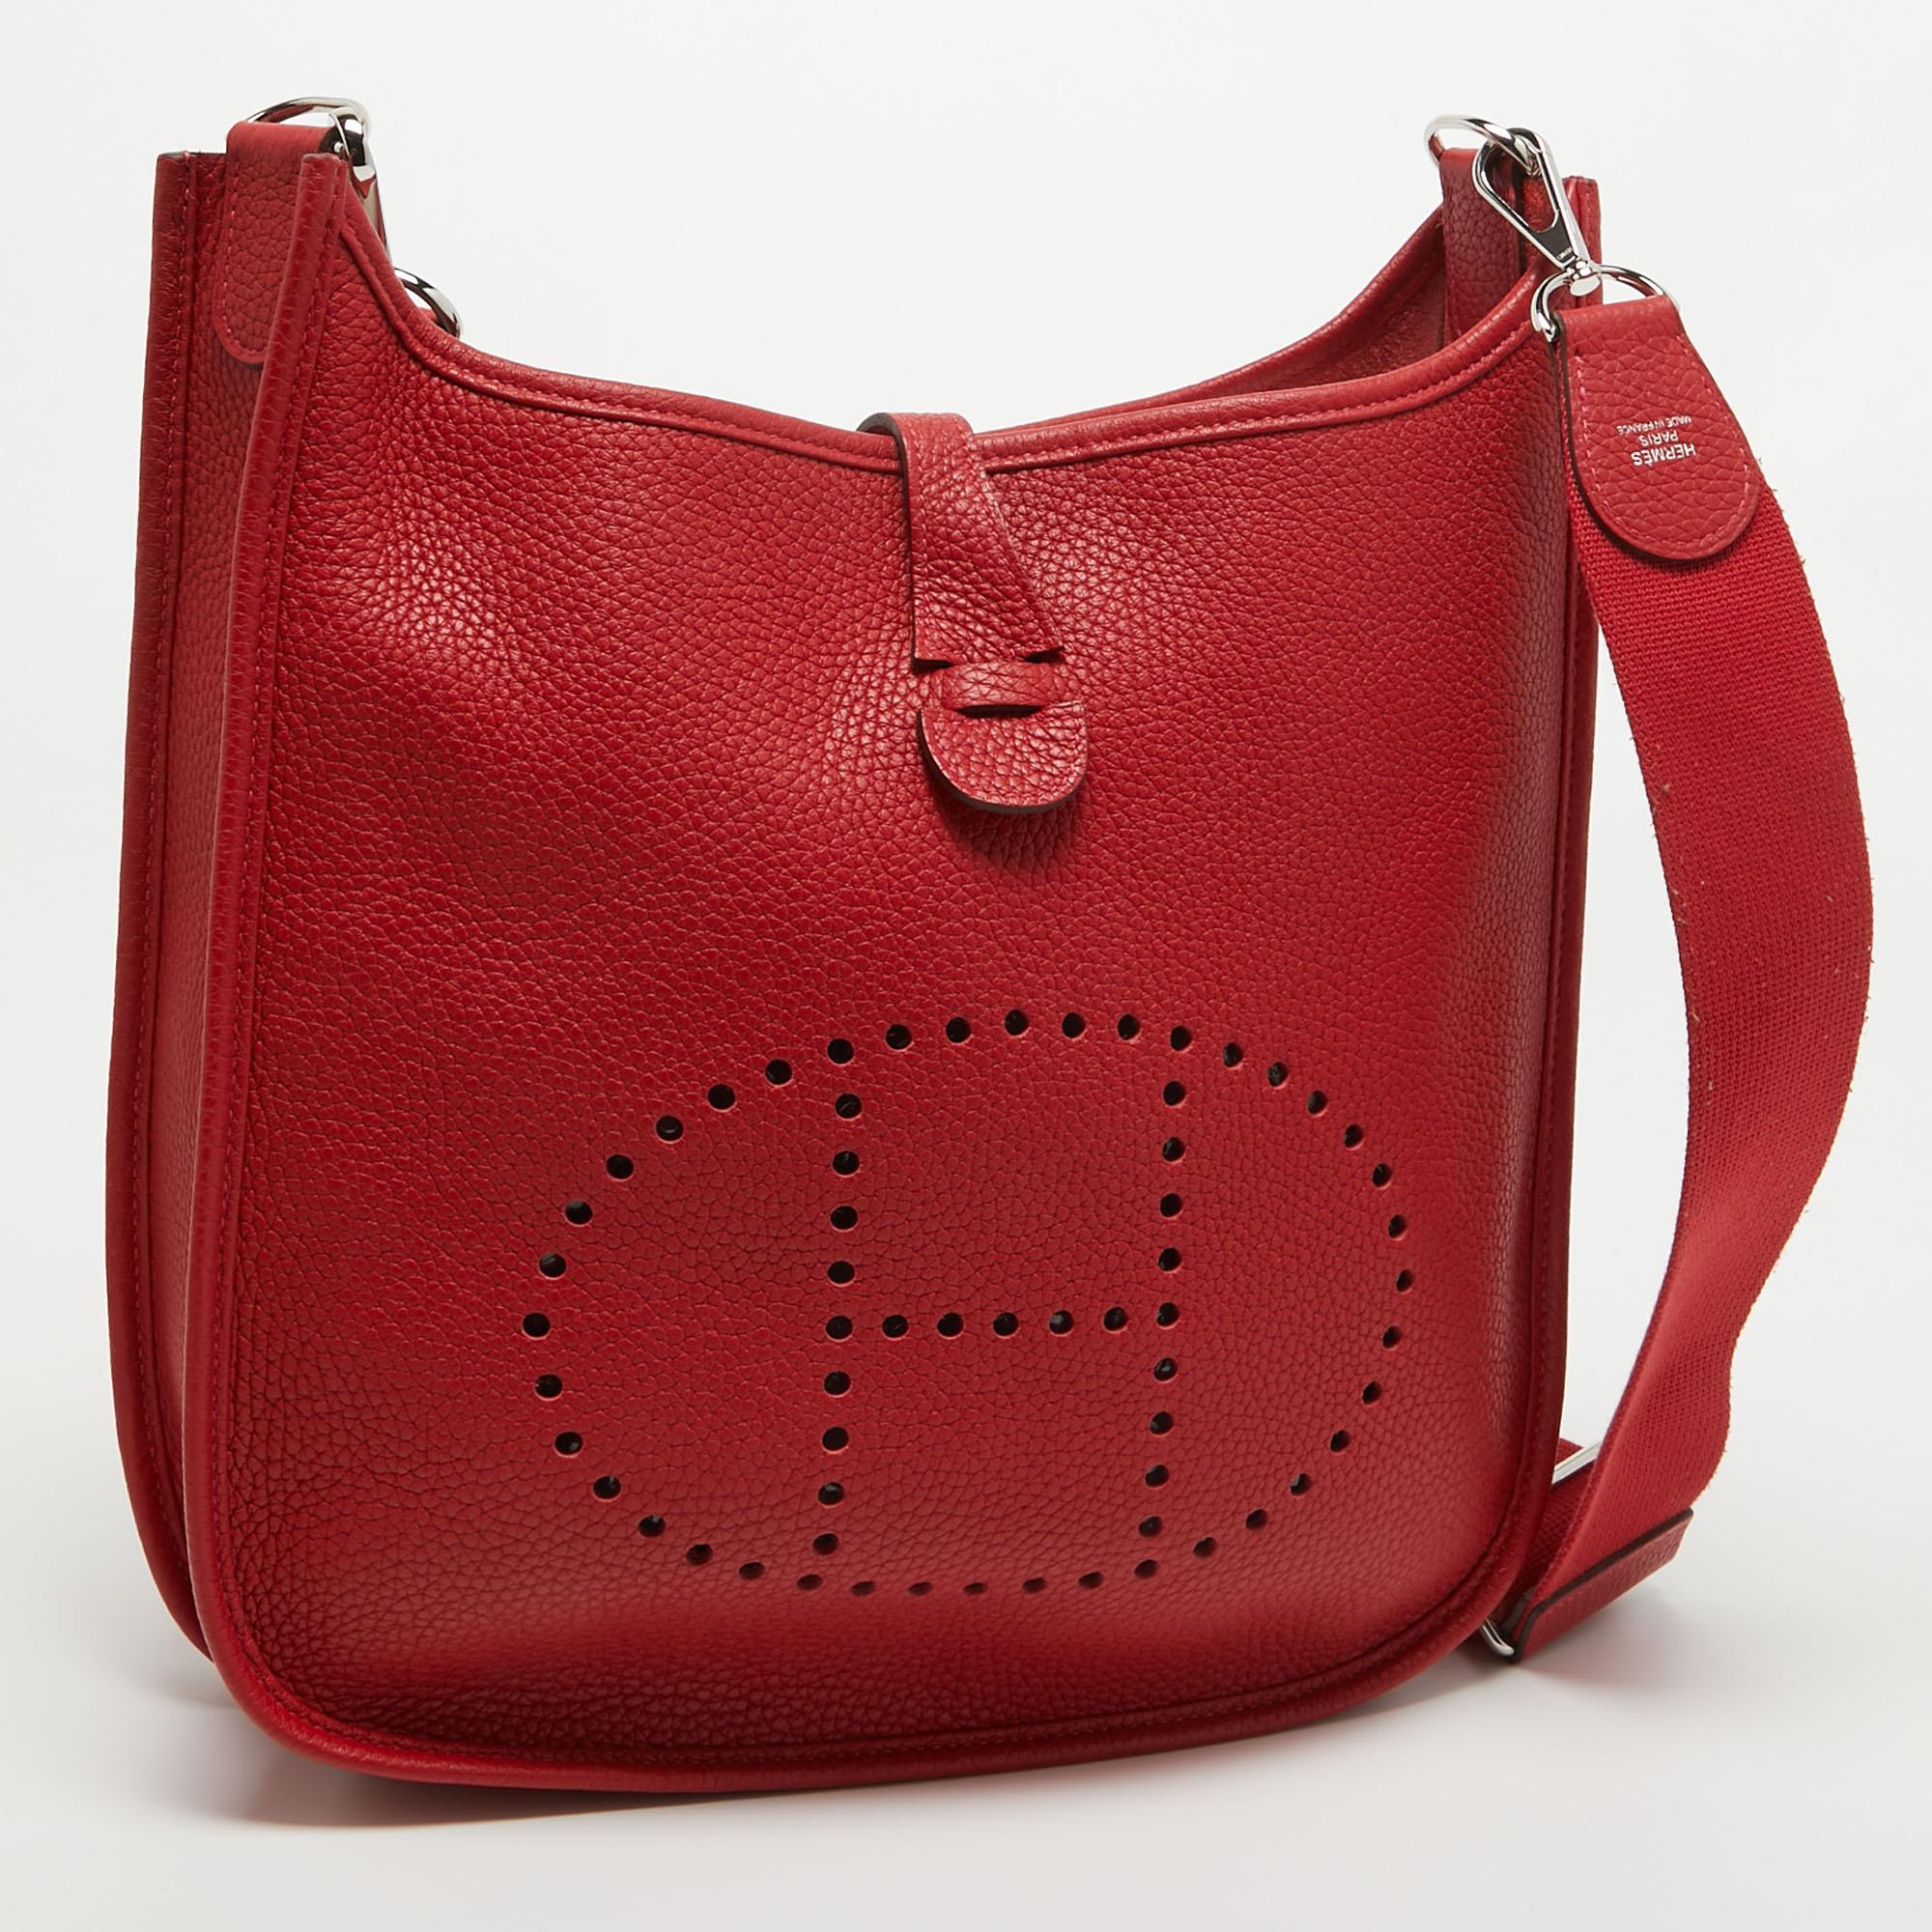 Die Tradition des Modehauses, gepaart mit modernem Design, macht diese Hermes Evelyne III PM zu einer einzigartigen Tasche. Es ist ein fabelhaftes Accessoire für den täglichen Gebrauch.

